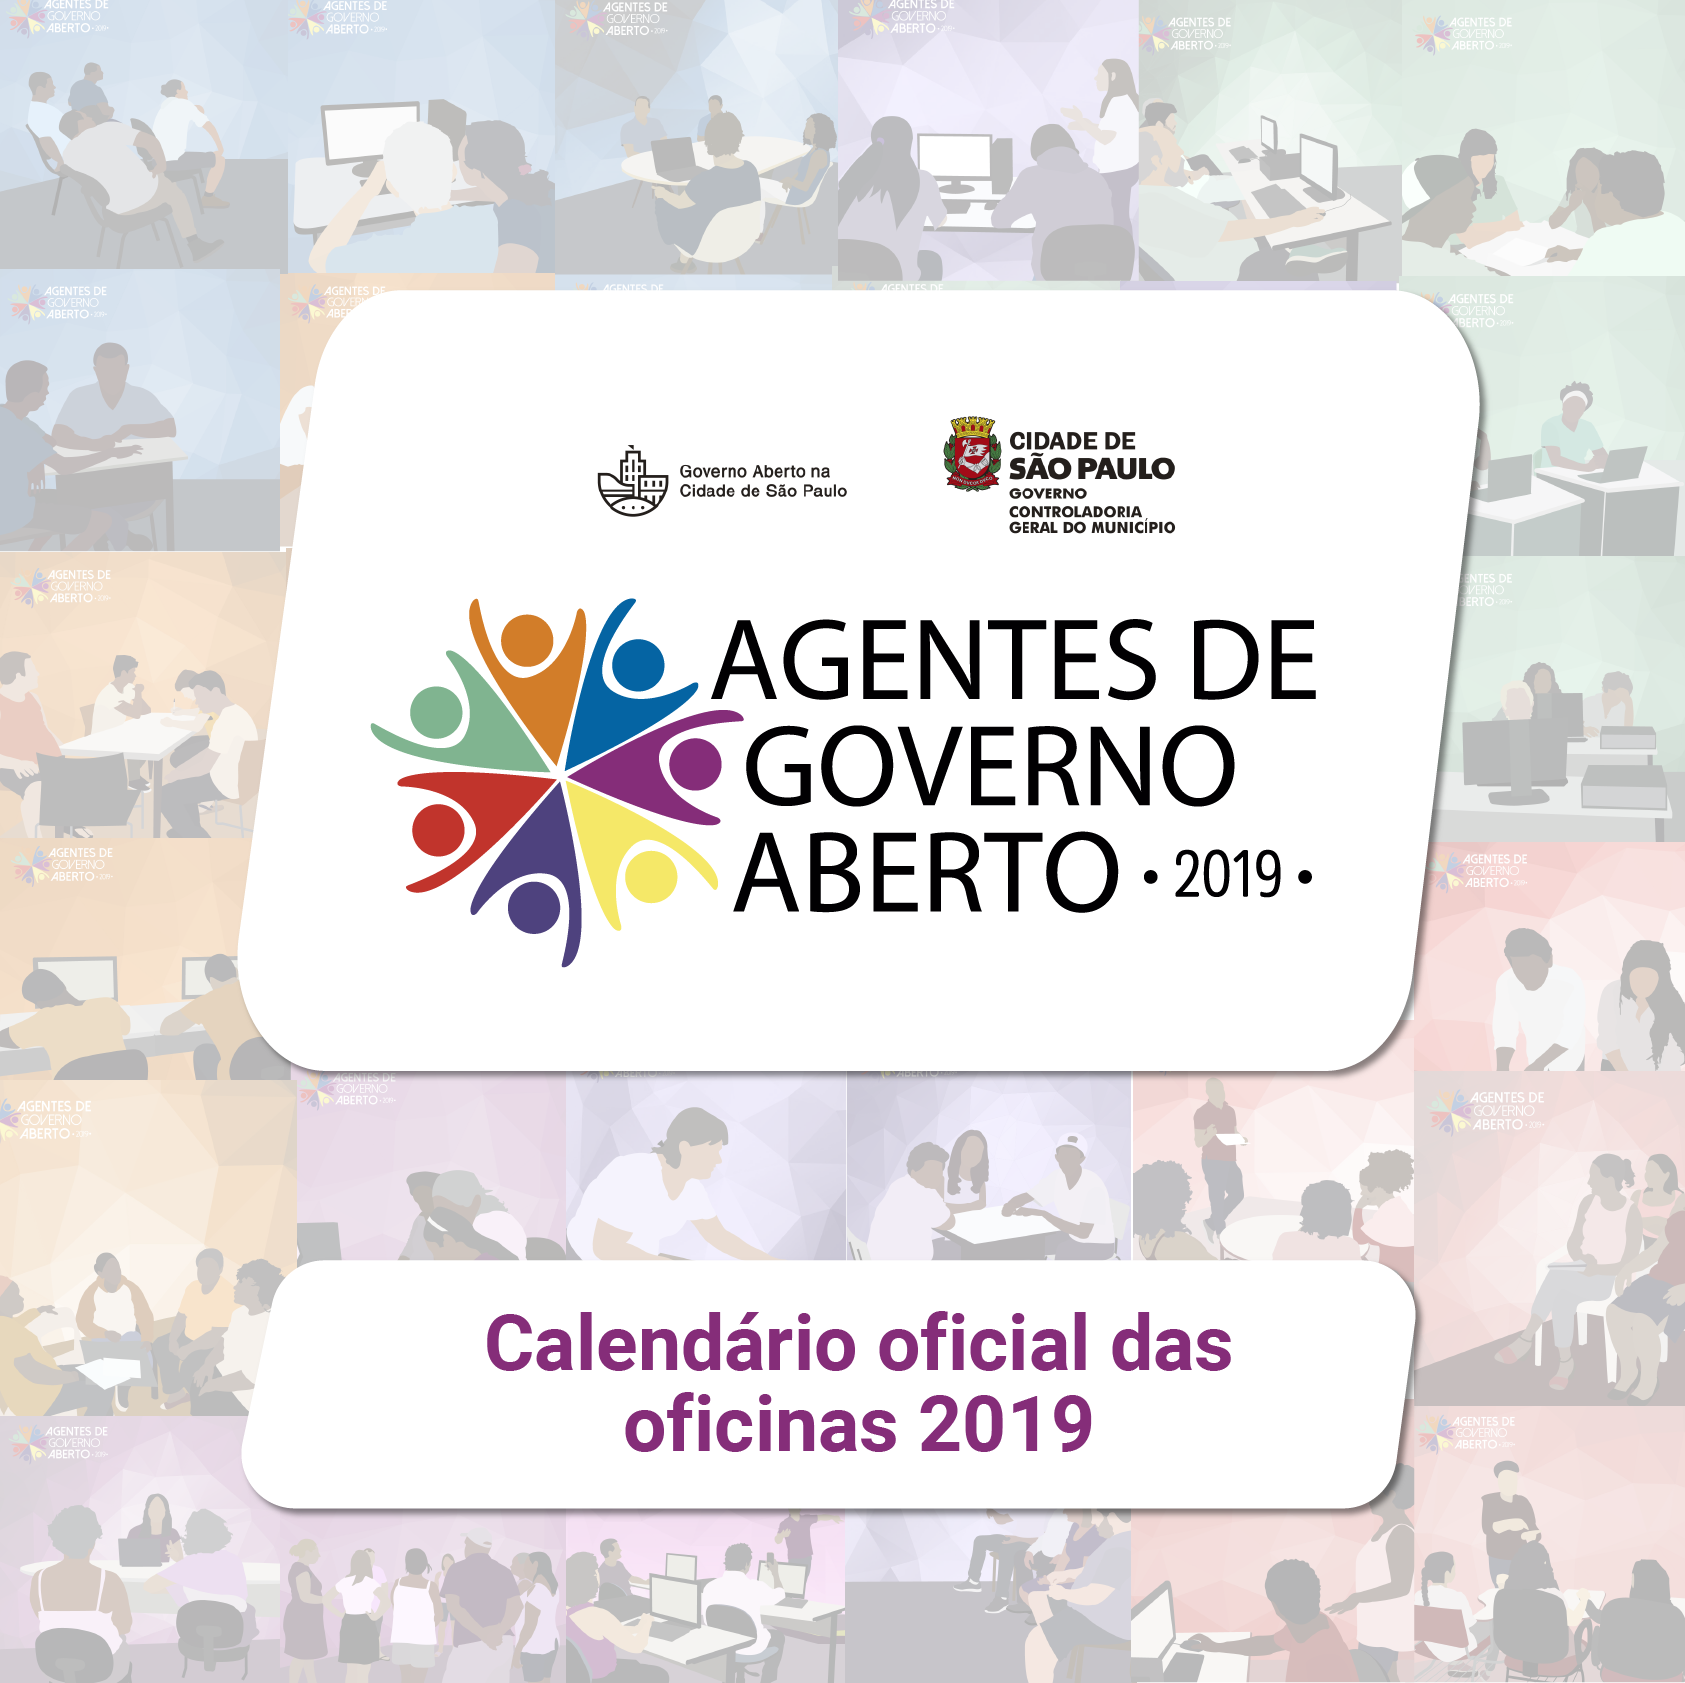 Mosaico de imagens ilustradas de pessoas com o logo do Programa Agentes de Governo Aberto e o subtítulo "Calendário oficial das oficinas 2019"